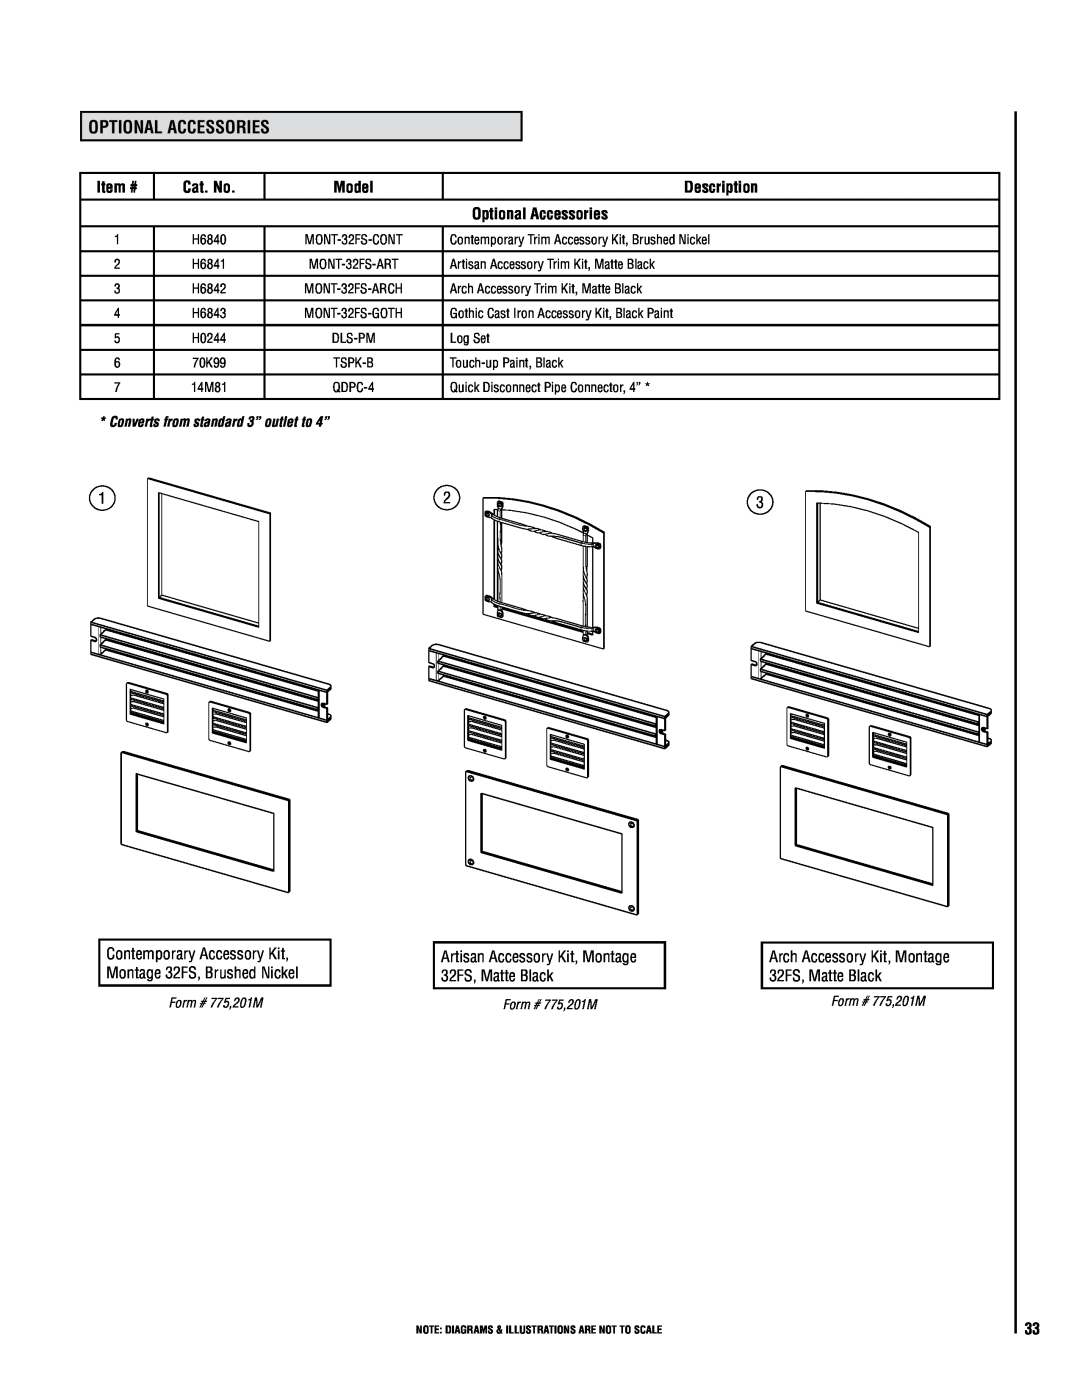 Lennox Hearth 32FS Optional Accessories, Item #, Cat. No, Model, Description, Arch Accessory Trim Kit, Matte Black 